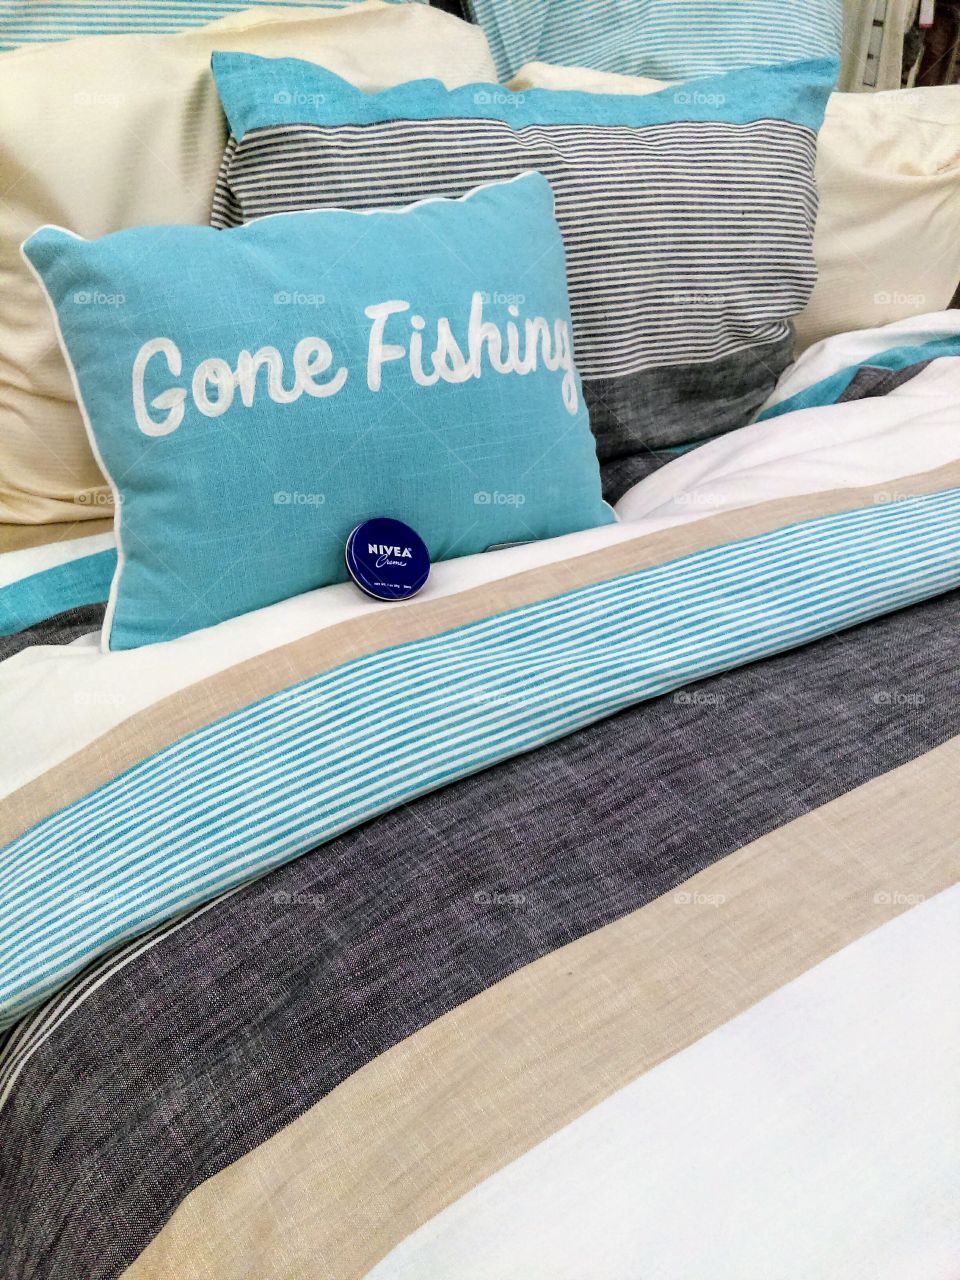 NIVEA Blue Gone Fishing Bed